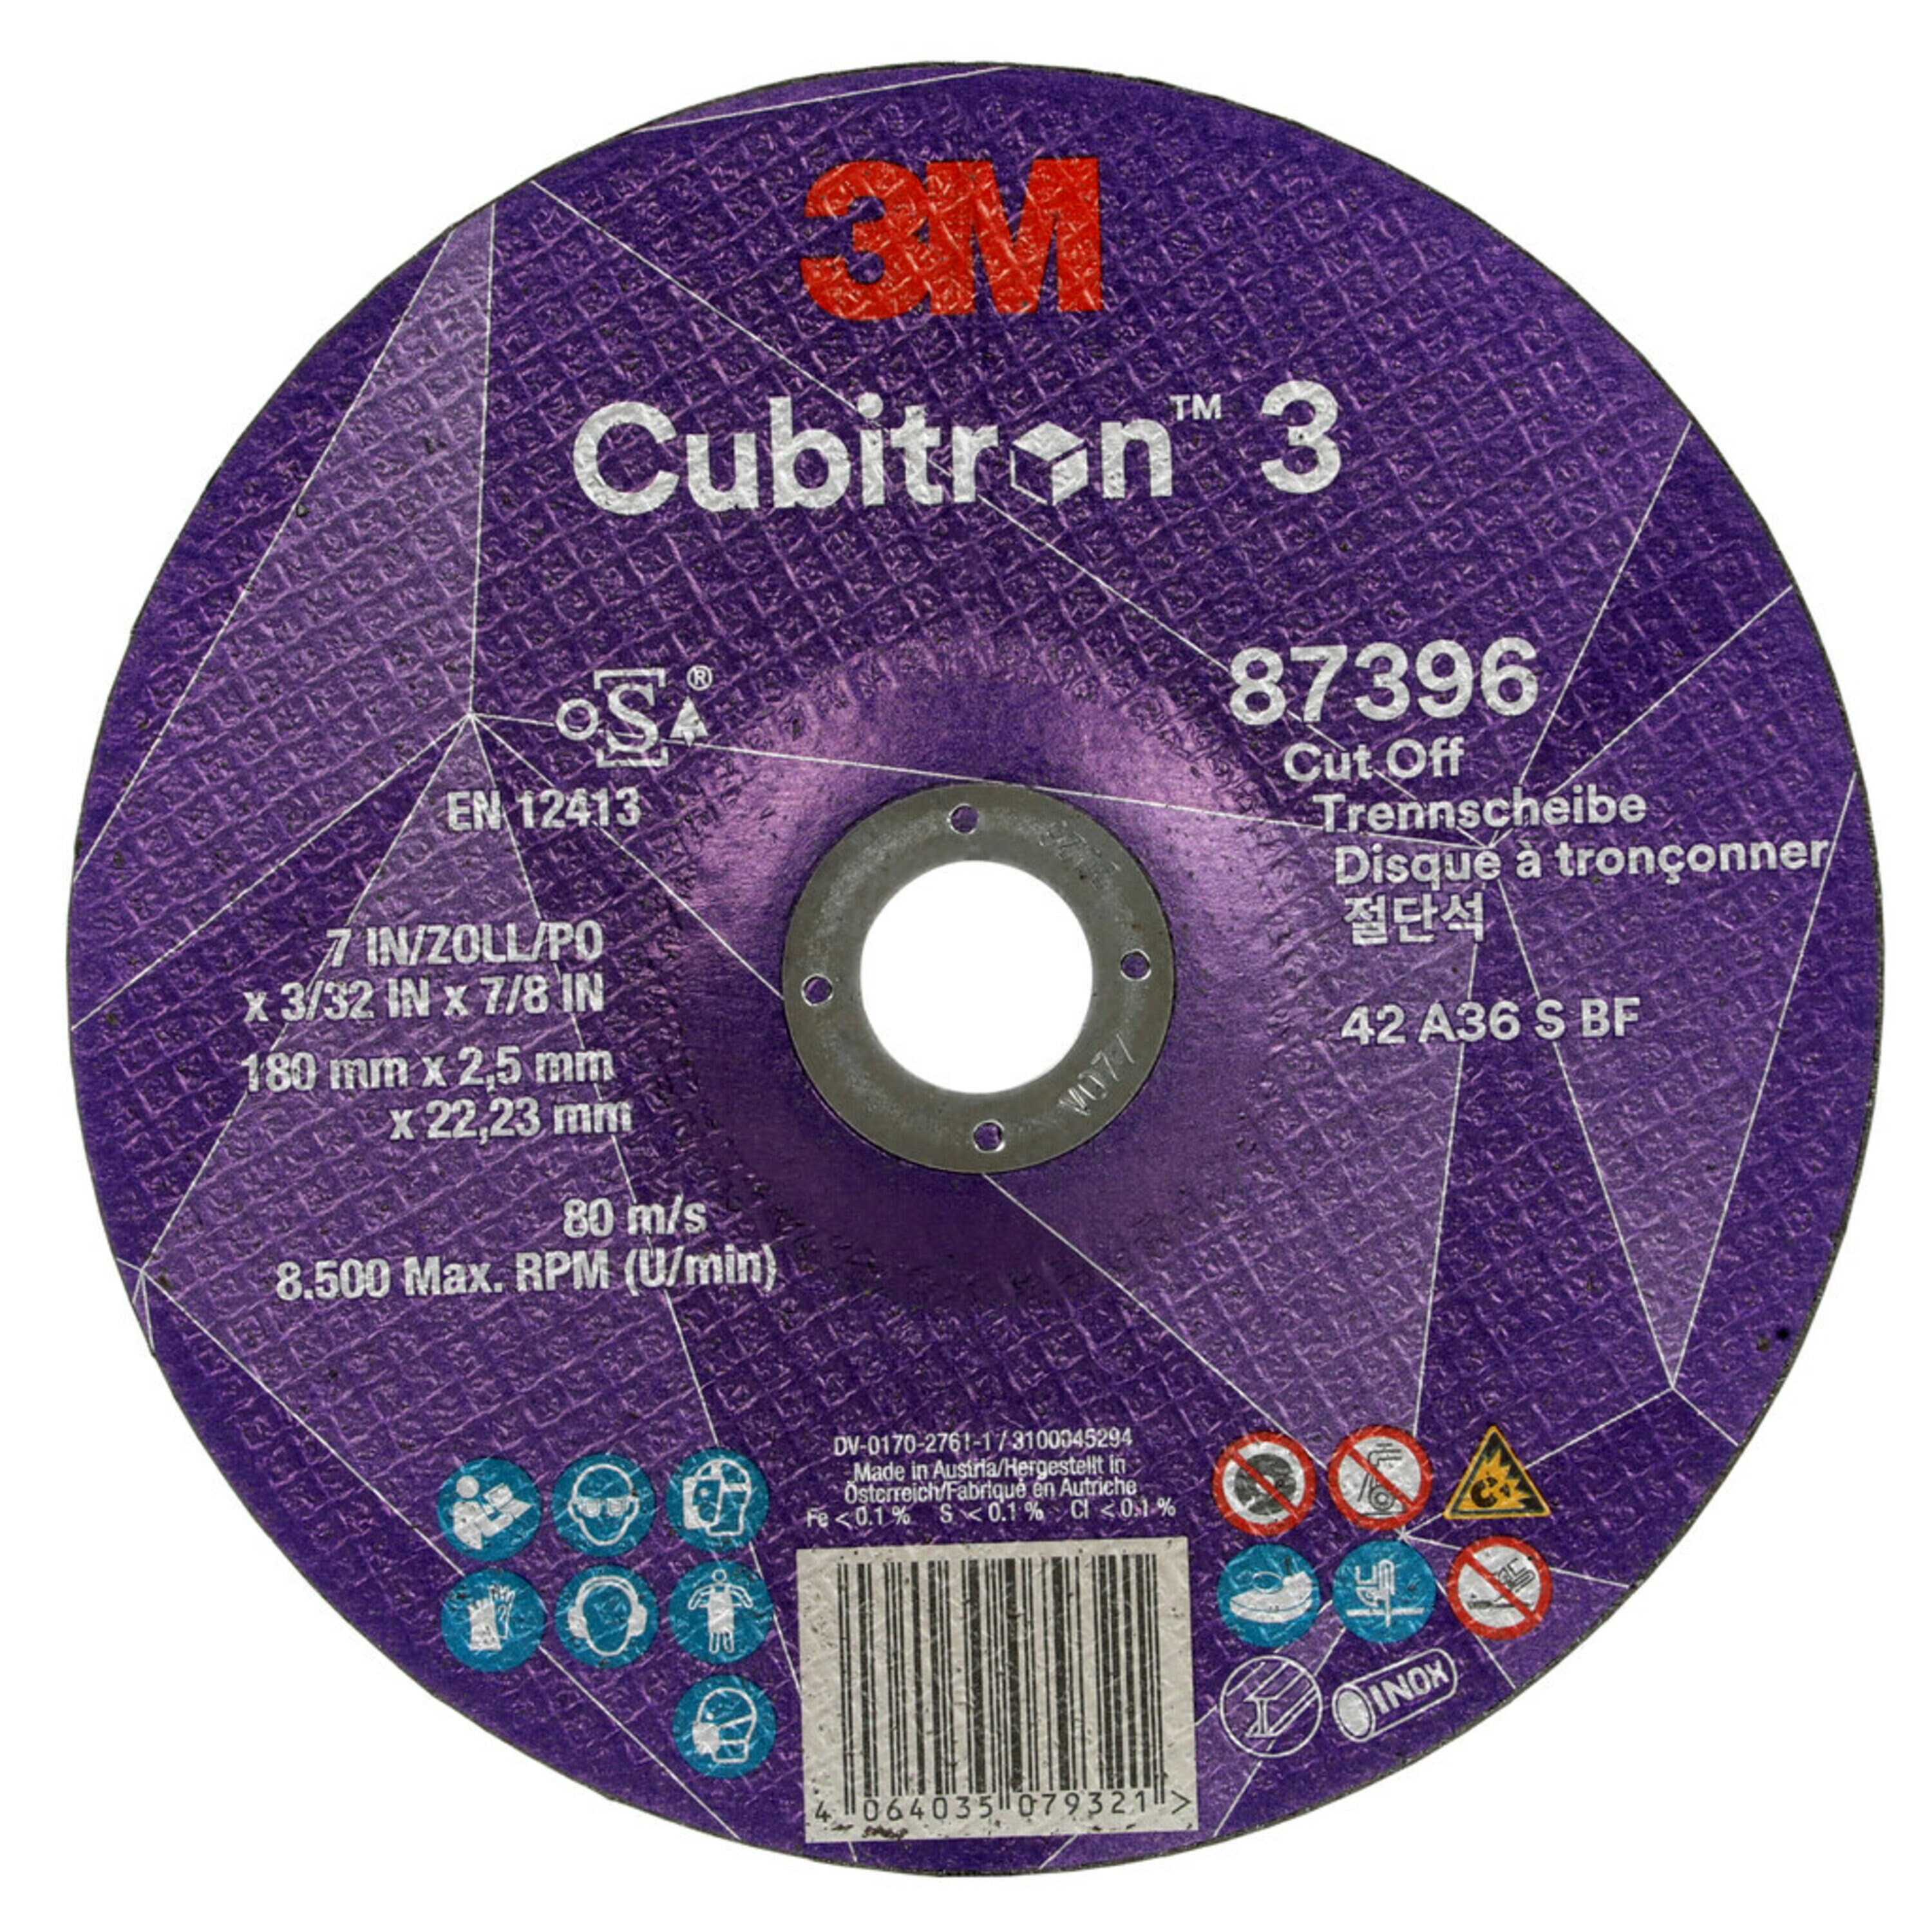 3M Cubitron 3 disque à tronçonner, 180 mm, 2,5 mm, 22,23 mm, 36 , type 42 #87396